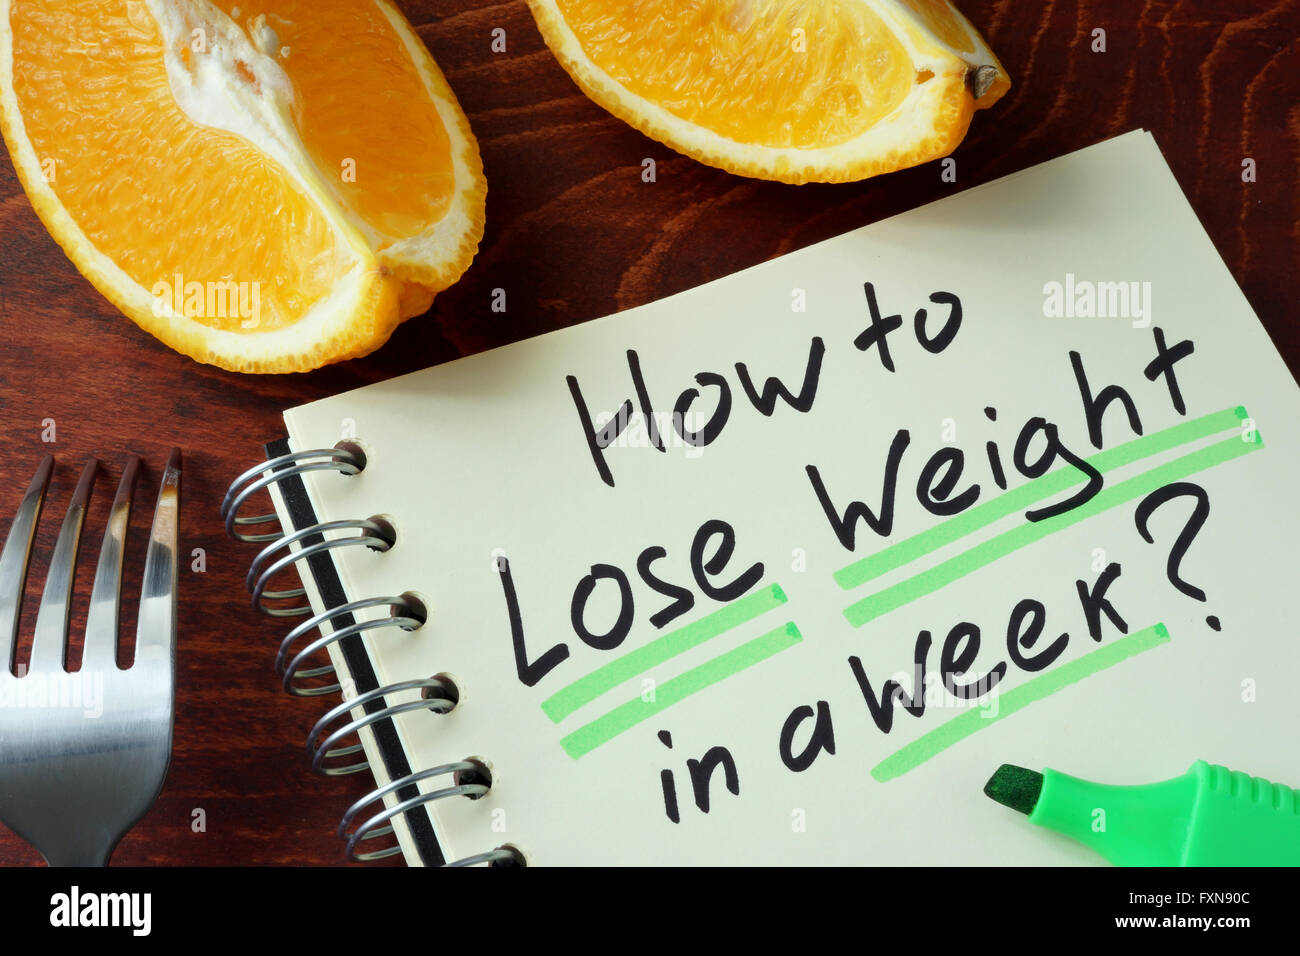 El bloc de notas con el signo de cómo perder peso en una semana. Foto de stock